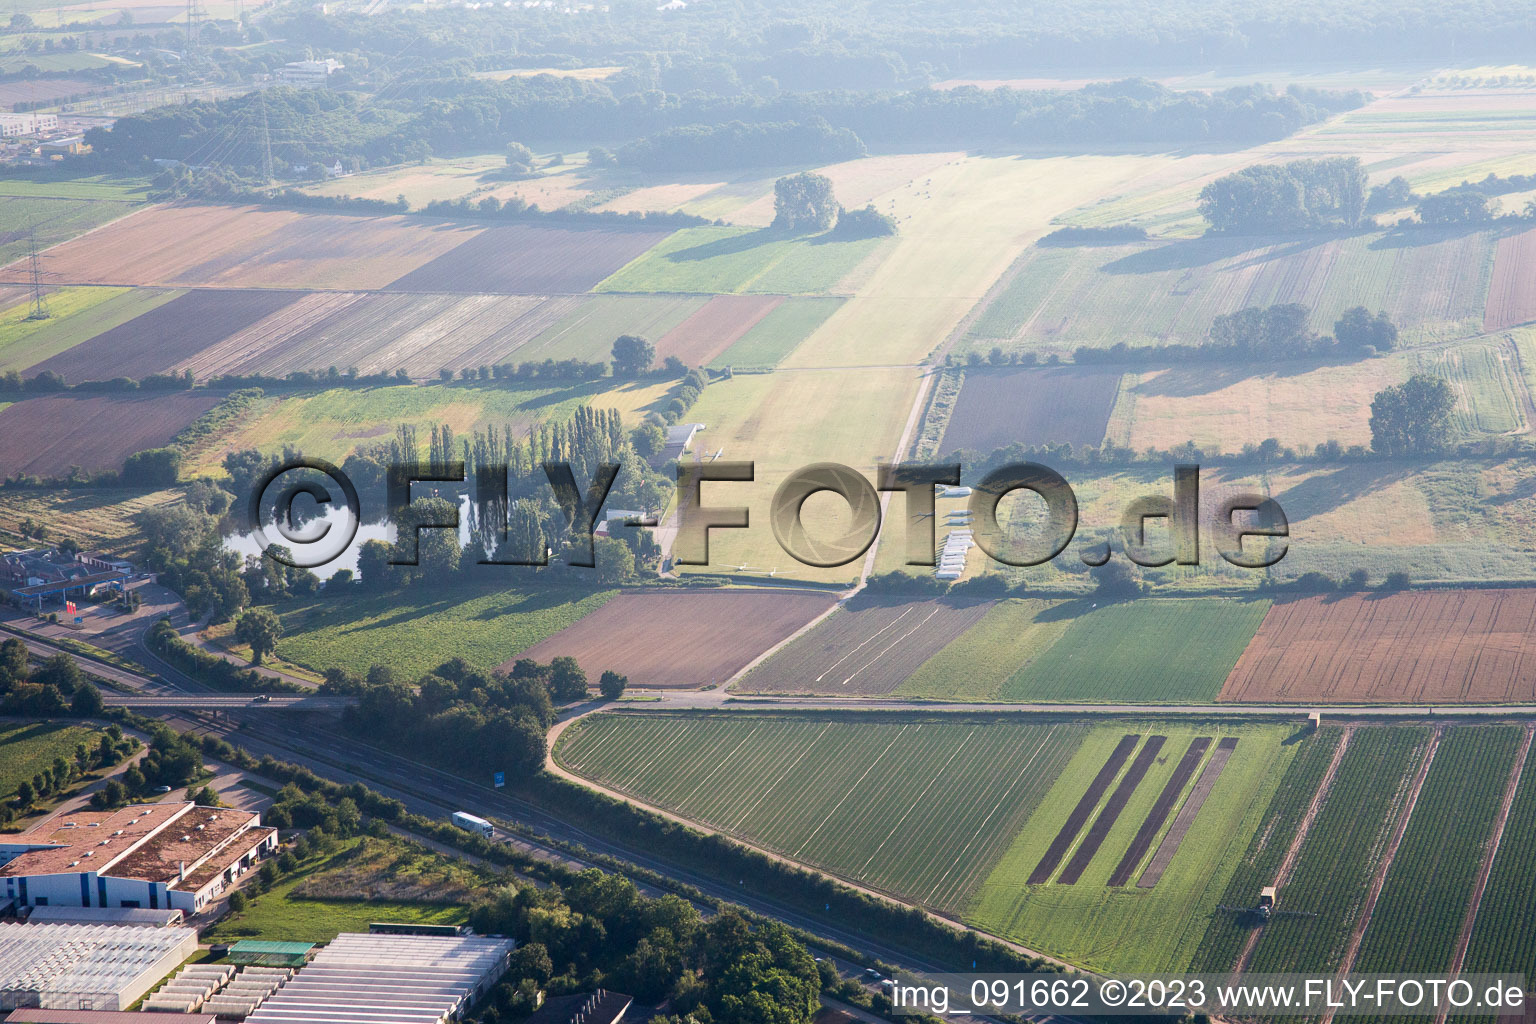 Glider airfield in the district Dannstadt in Dannstadt-Schauernheim in the state Rhineland-Palatinate, Germany